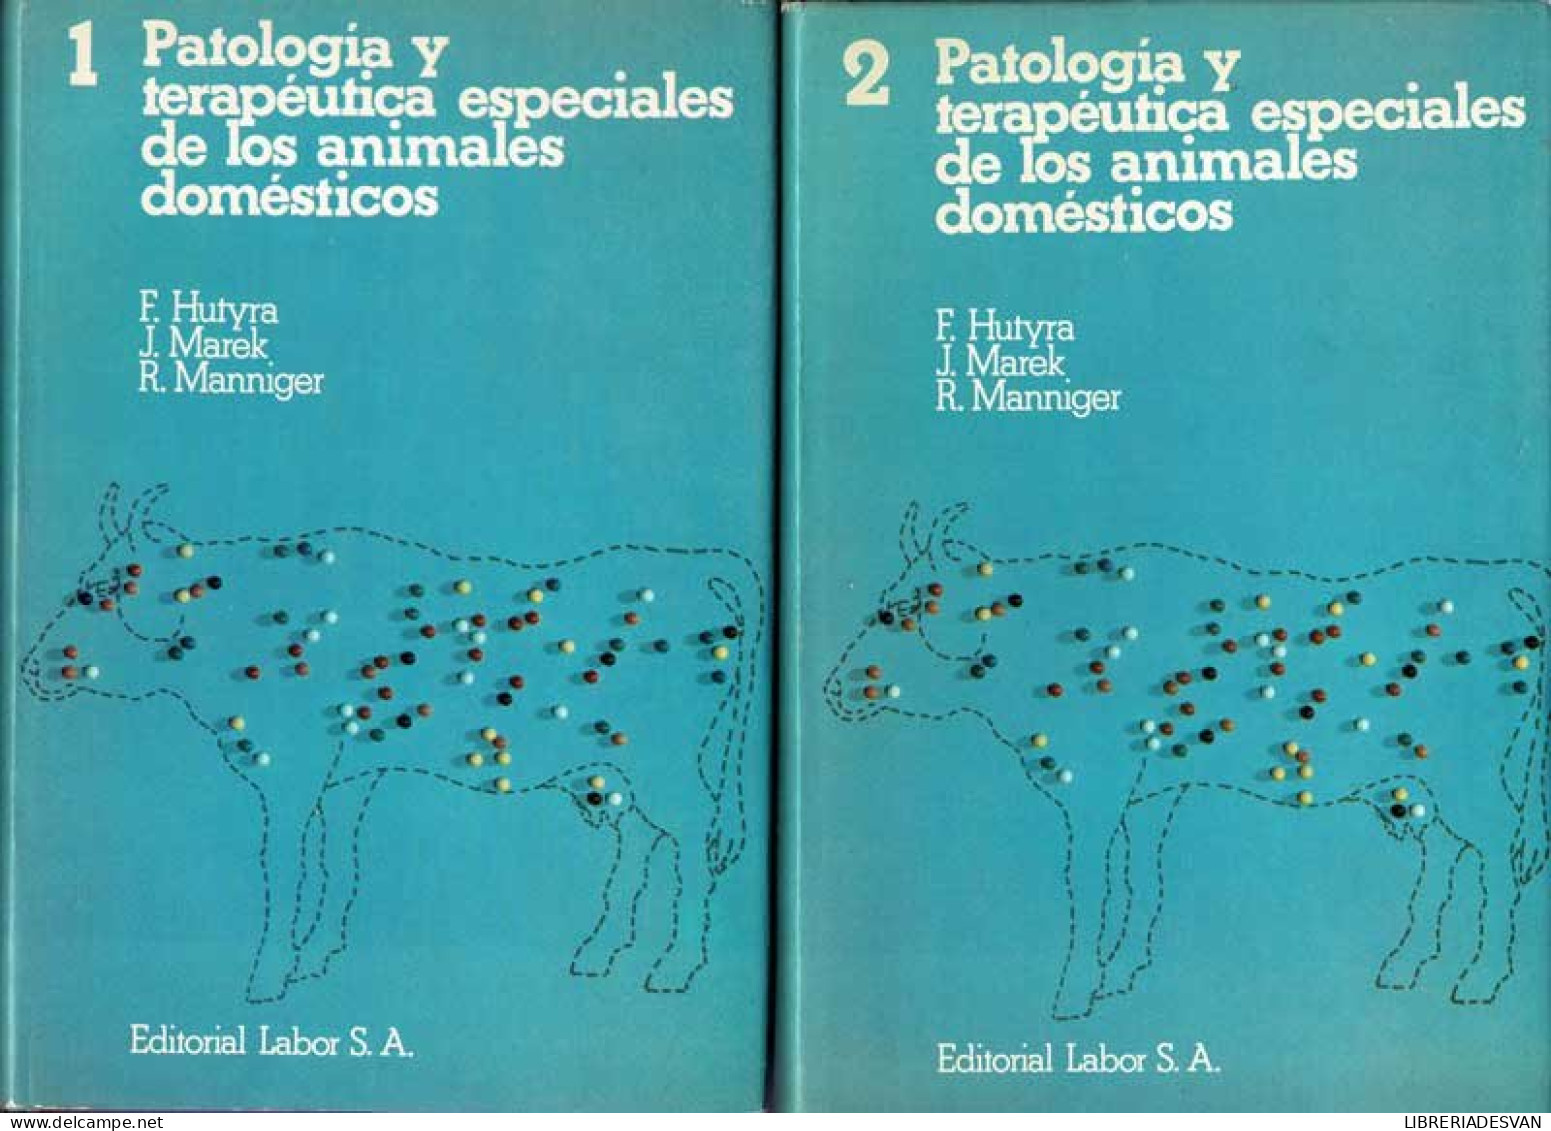 Patología Y Terapéutica Especiales De Los Animales Domésticos. 2 Volúmenes - F. Hutyra, J. Marek, R. Manniger - Praktisch